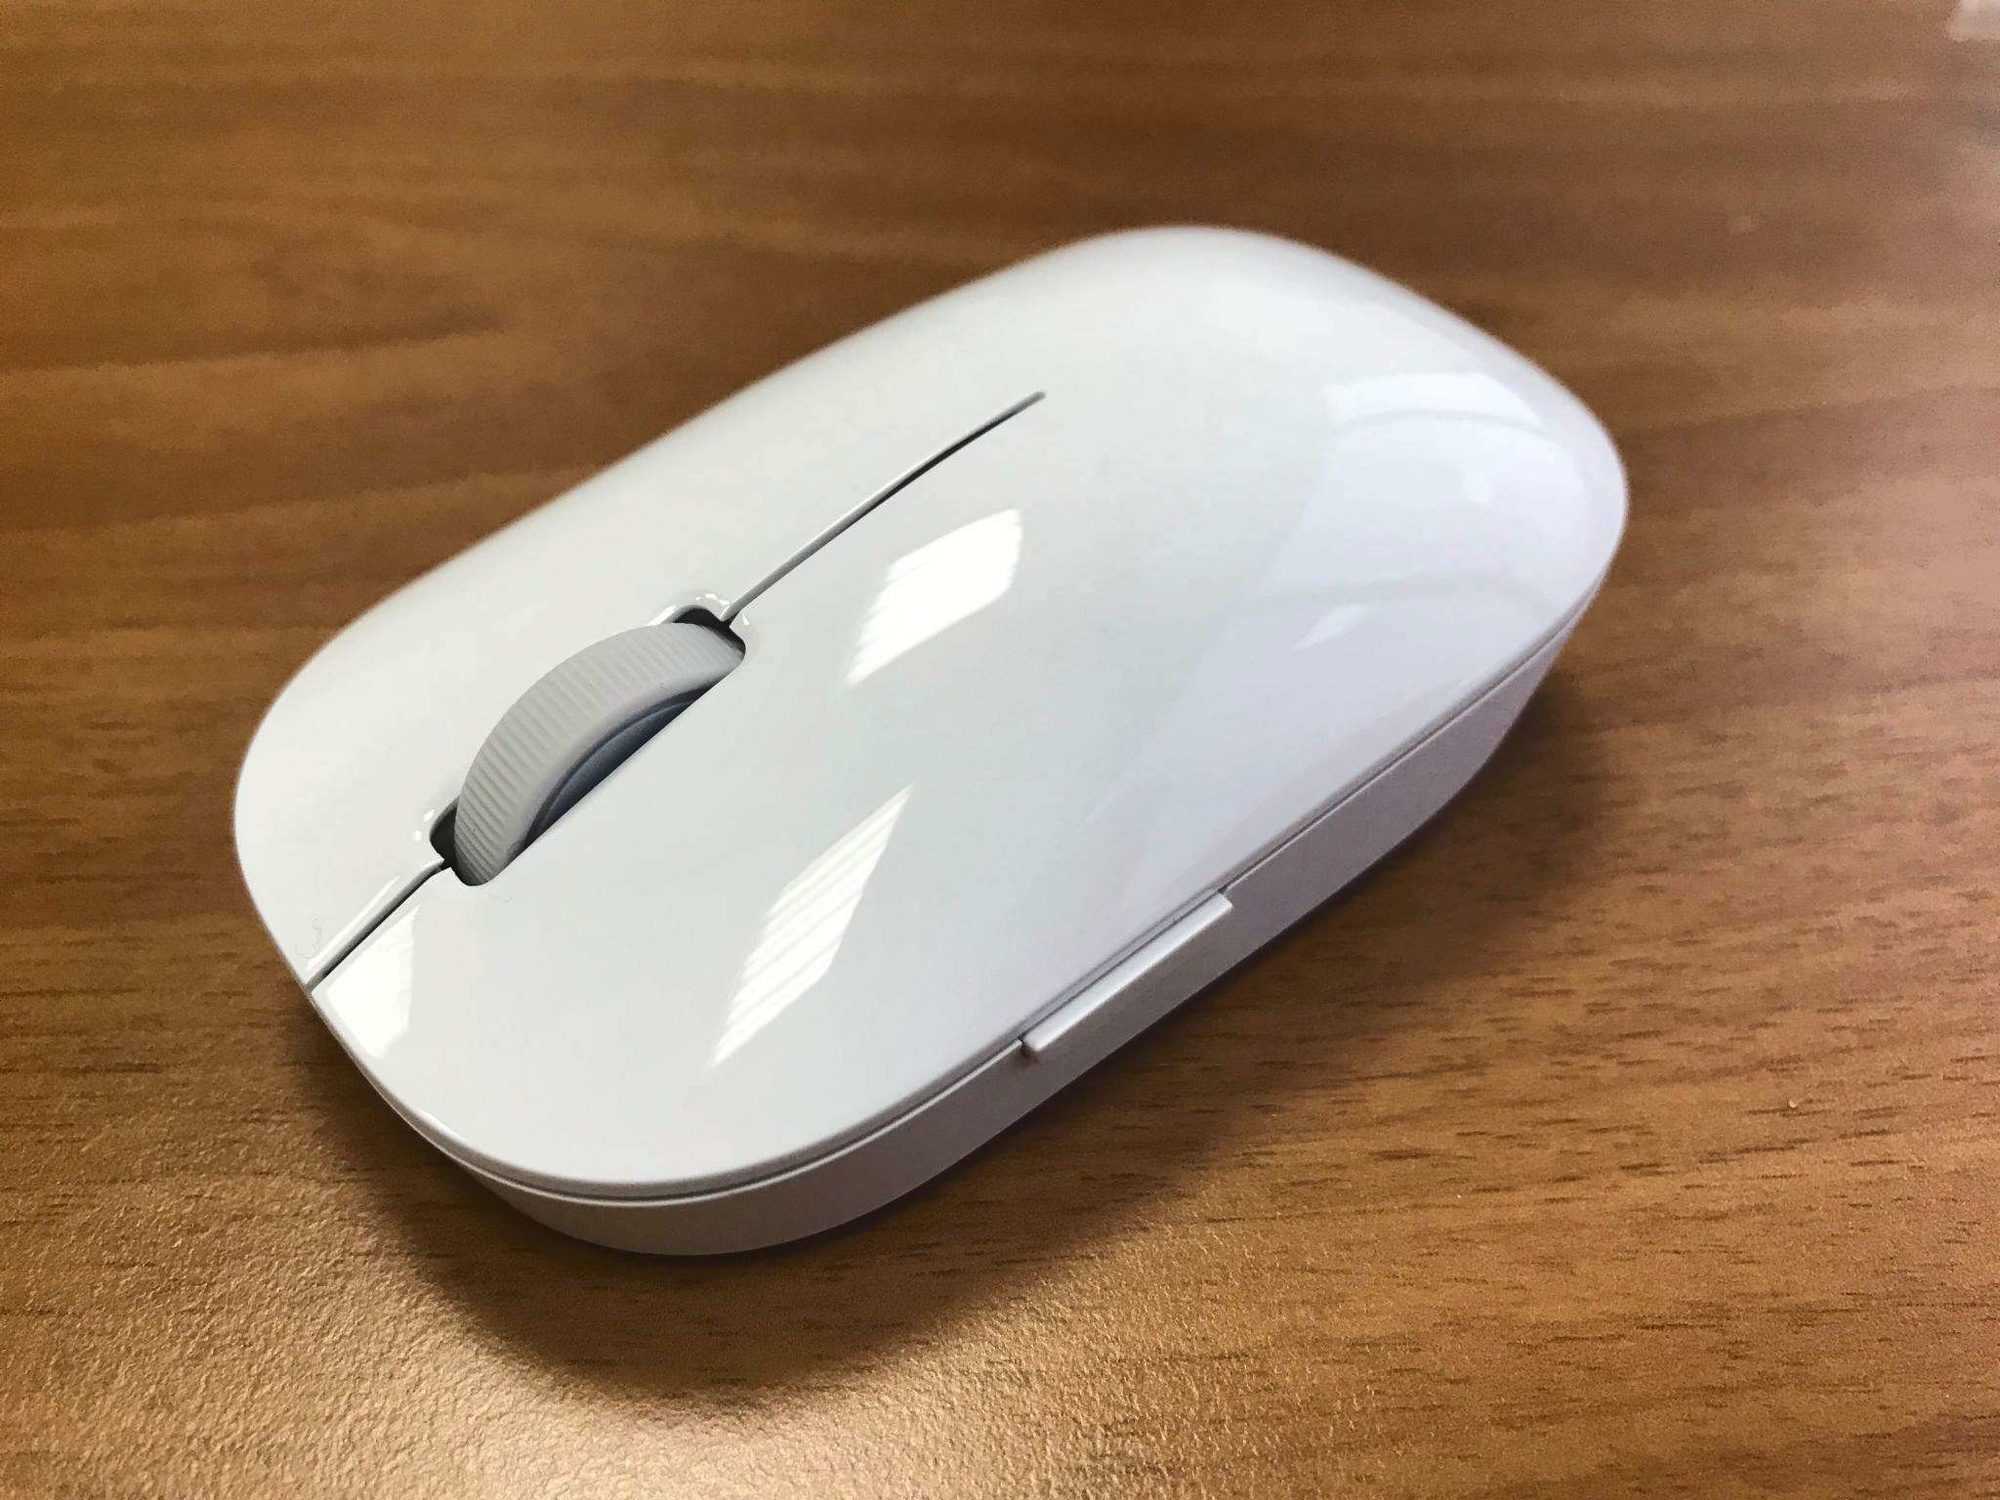 Напомним в том году китайская компания анонсировала первую беспроводную мышку модели Mi Wireless Mouse Наконец-то пользователи дождались обновления Второе поколение